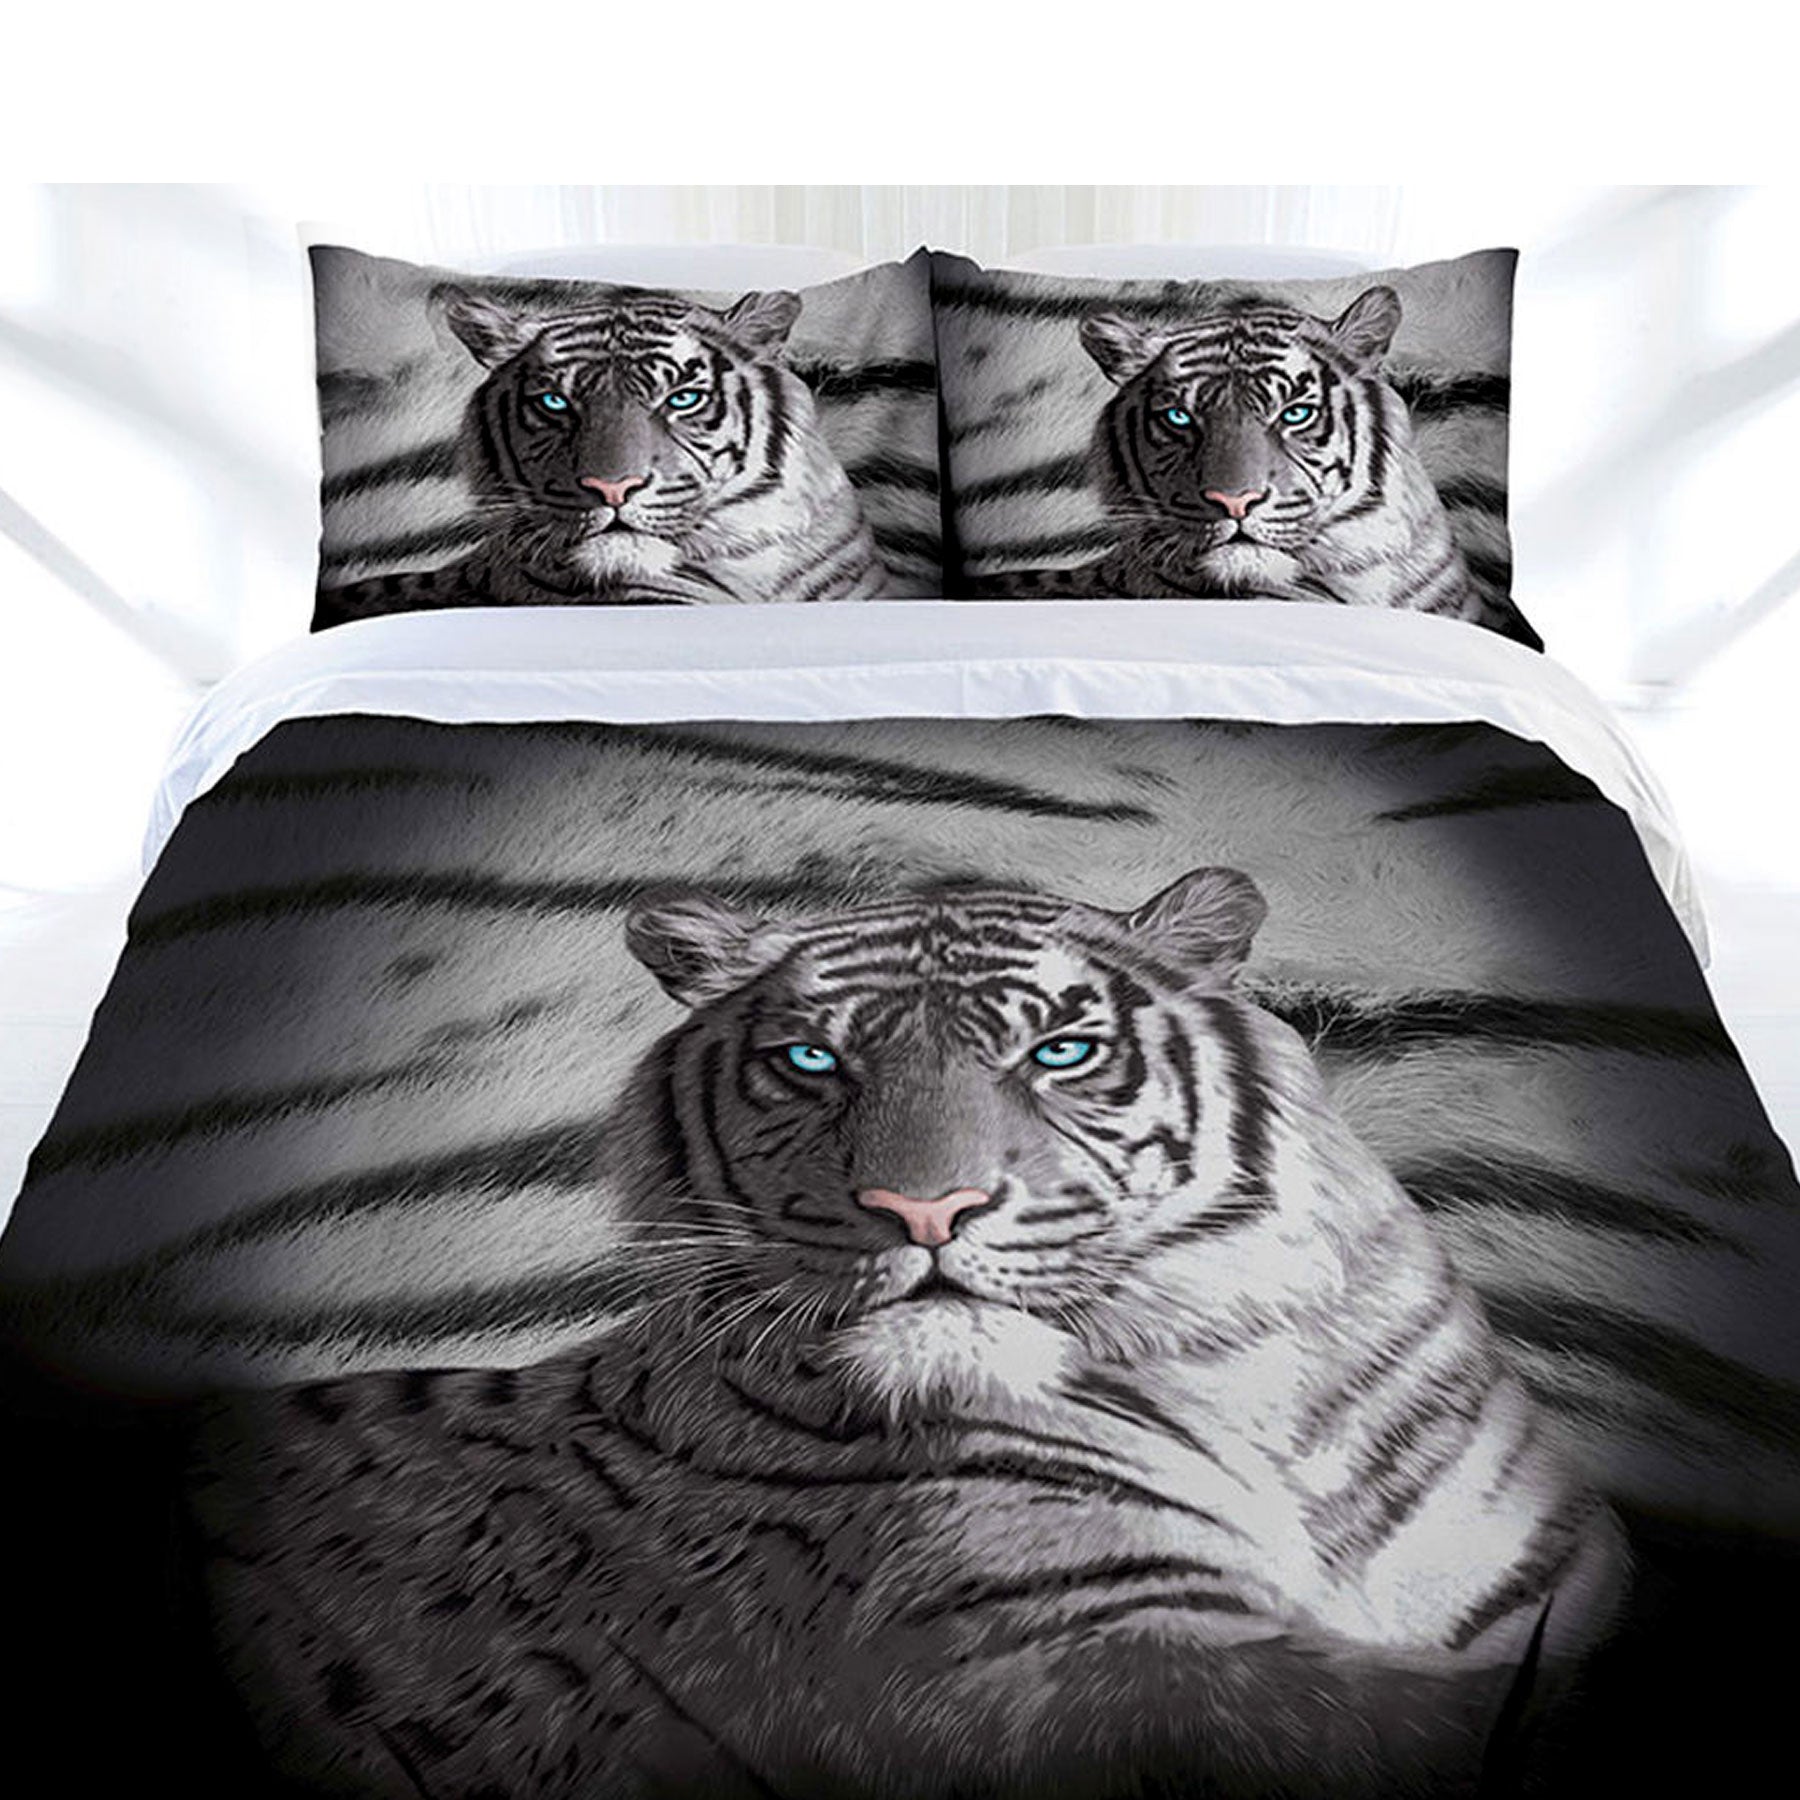 Just Home Blue Eyes Stripes Tiger Quilt Cover Set King - Newstart Furniture